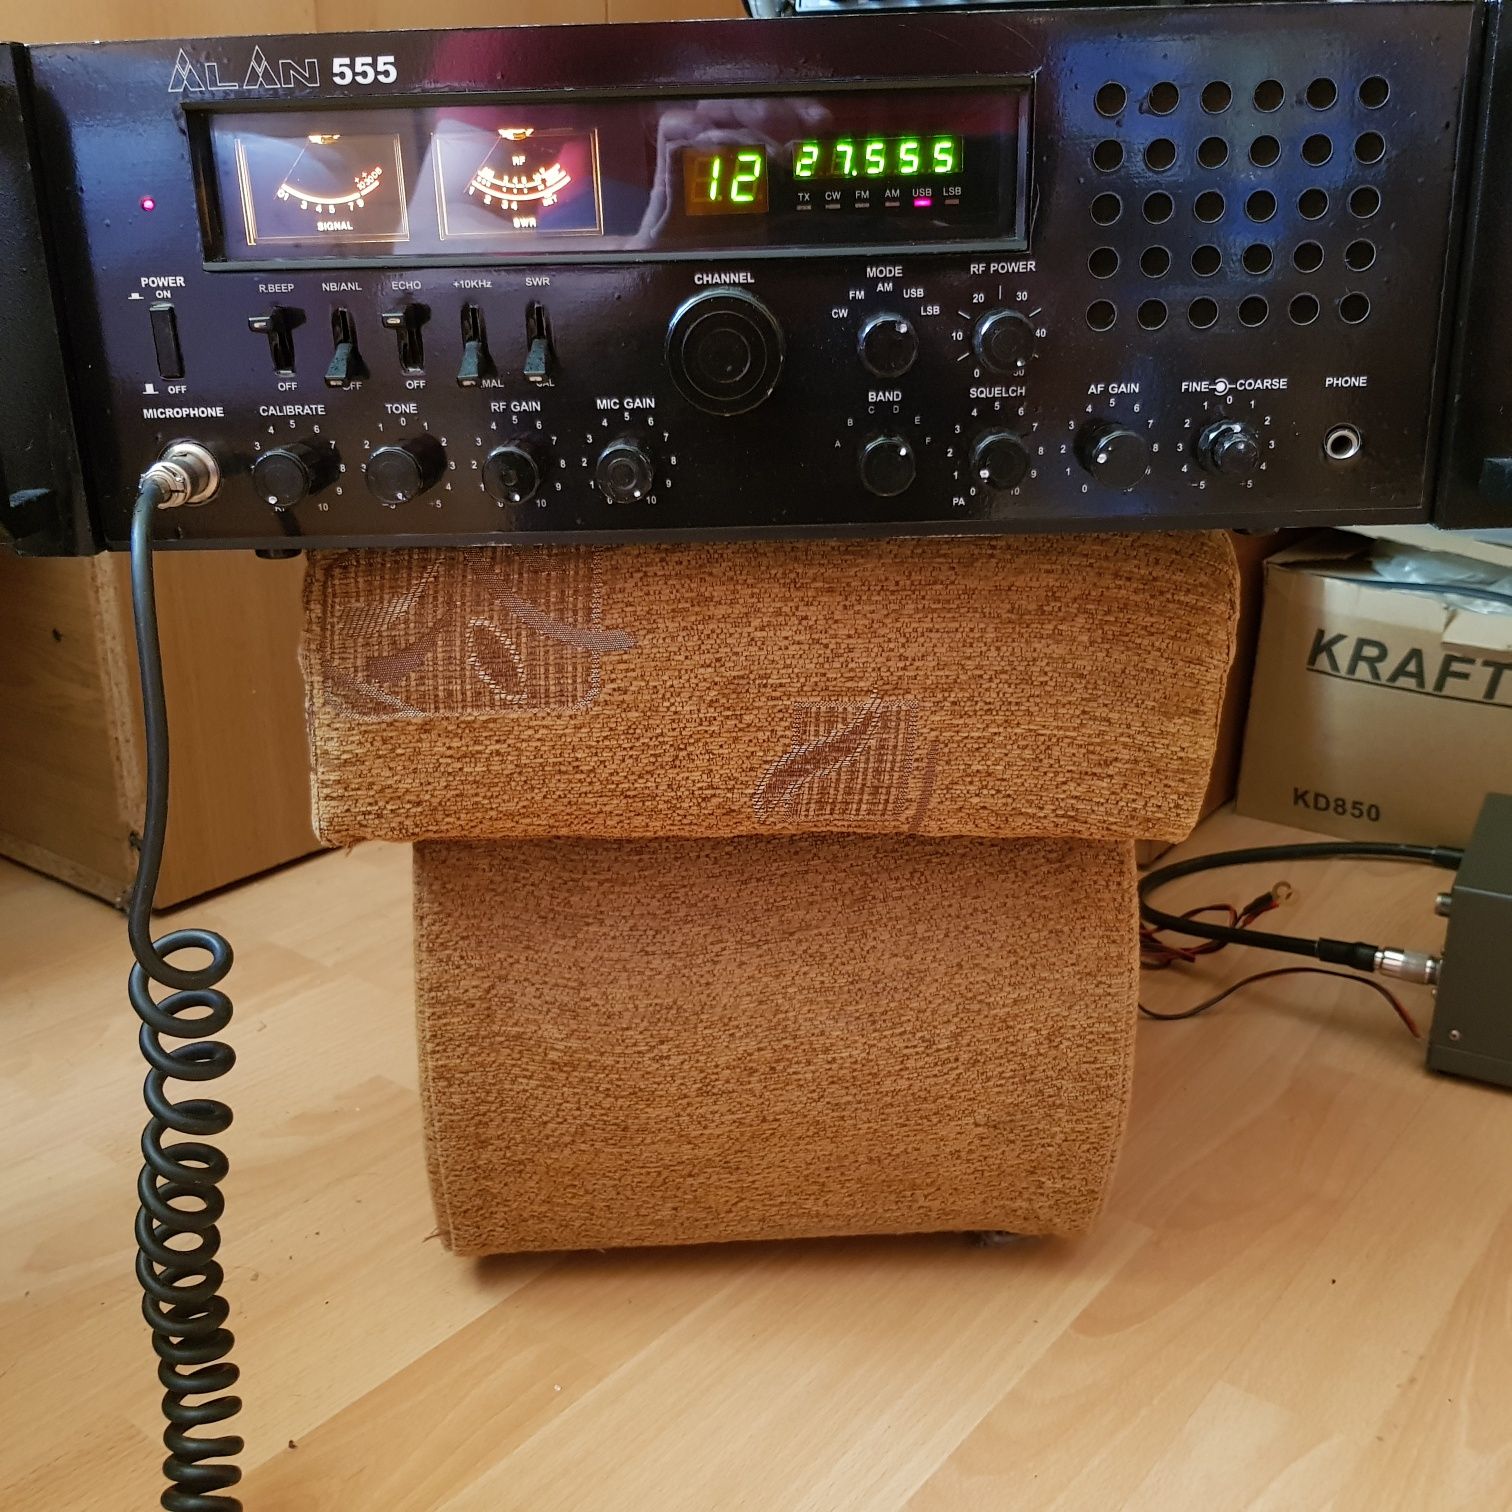 Alan 555 cb radio